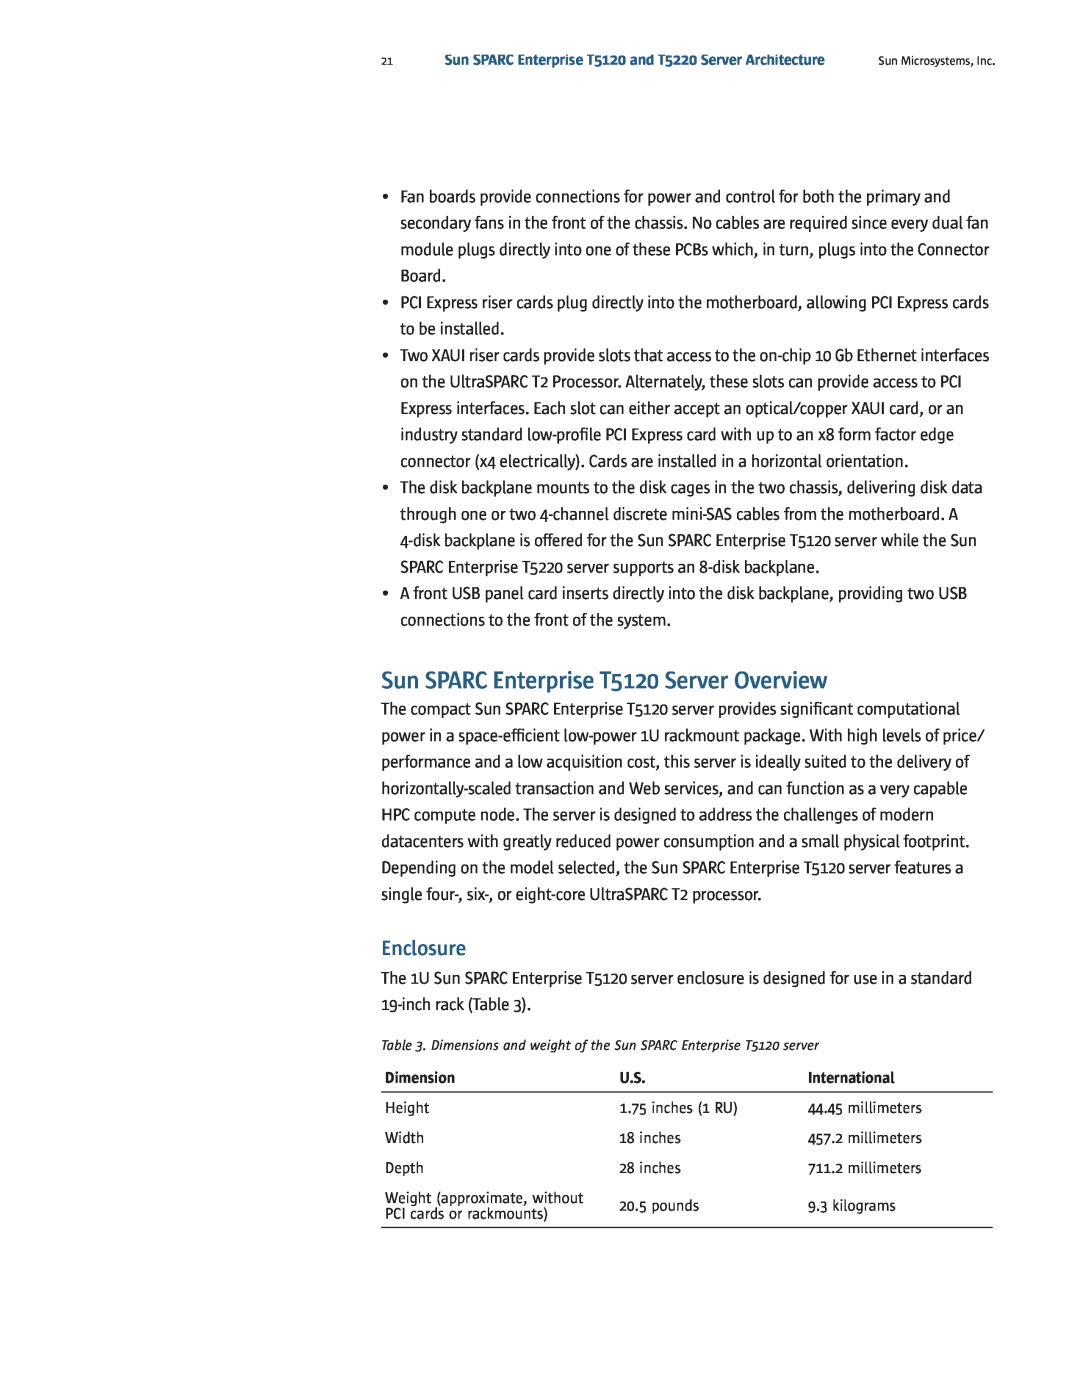 Sun Microsystems T5220 manual Sun SPARC Enterprise T5120 Server Overview, Enclosure 